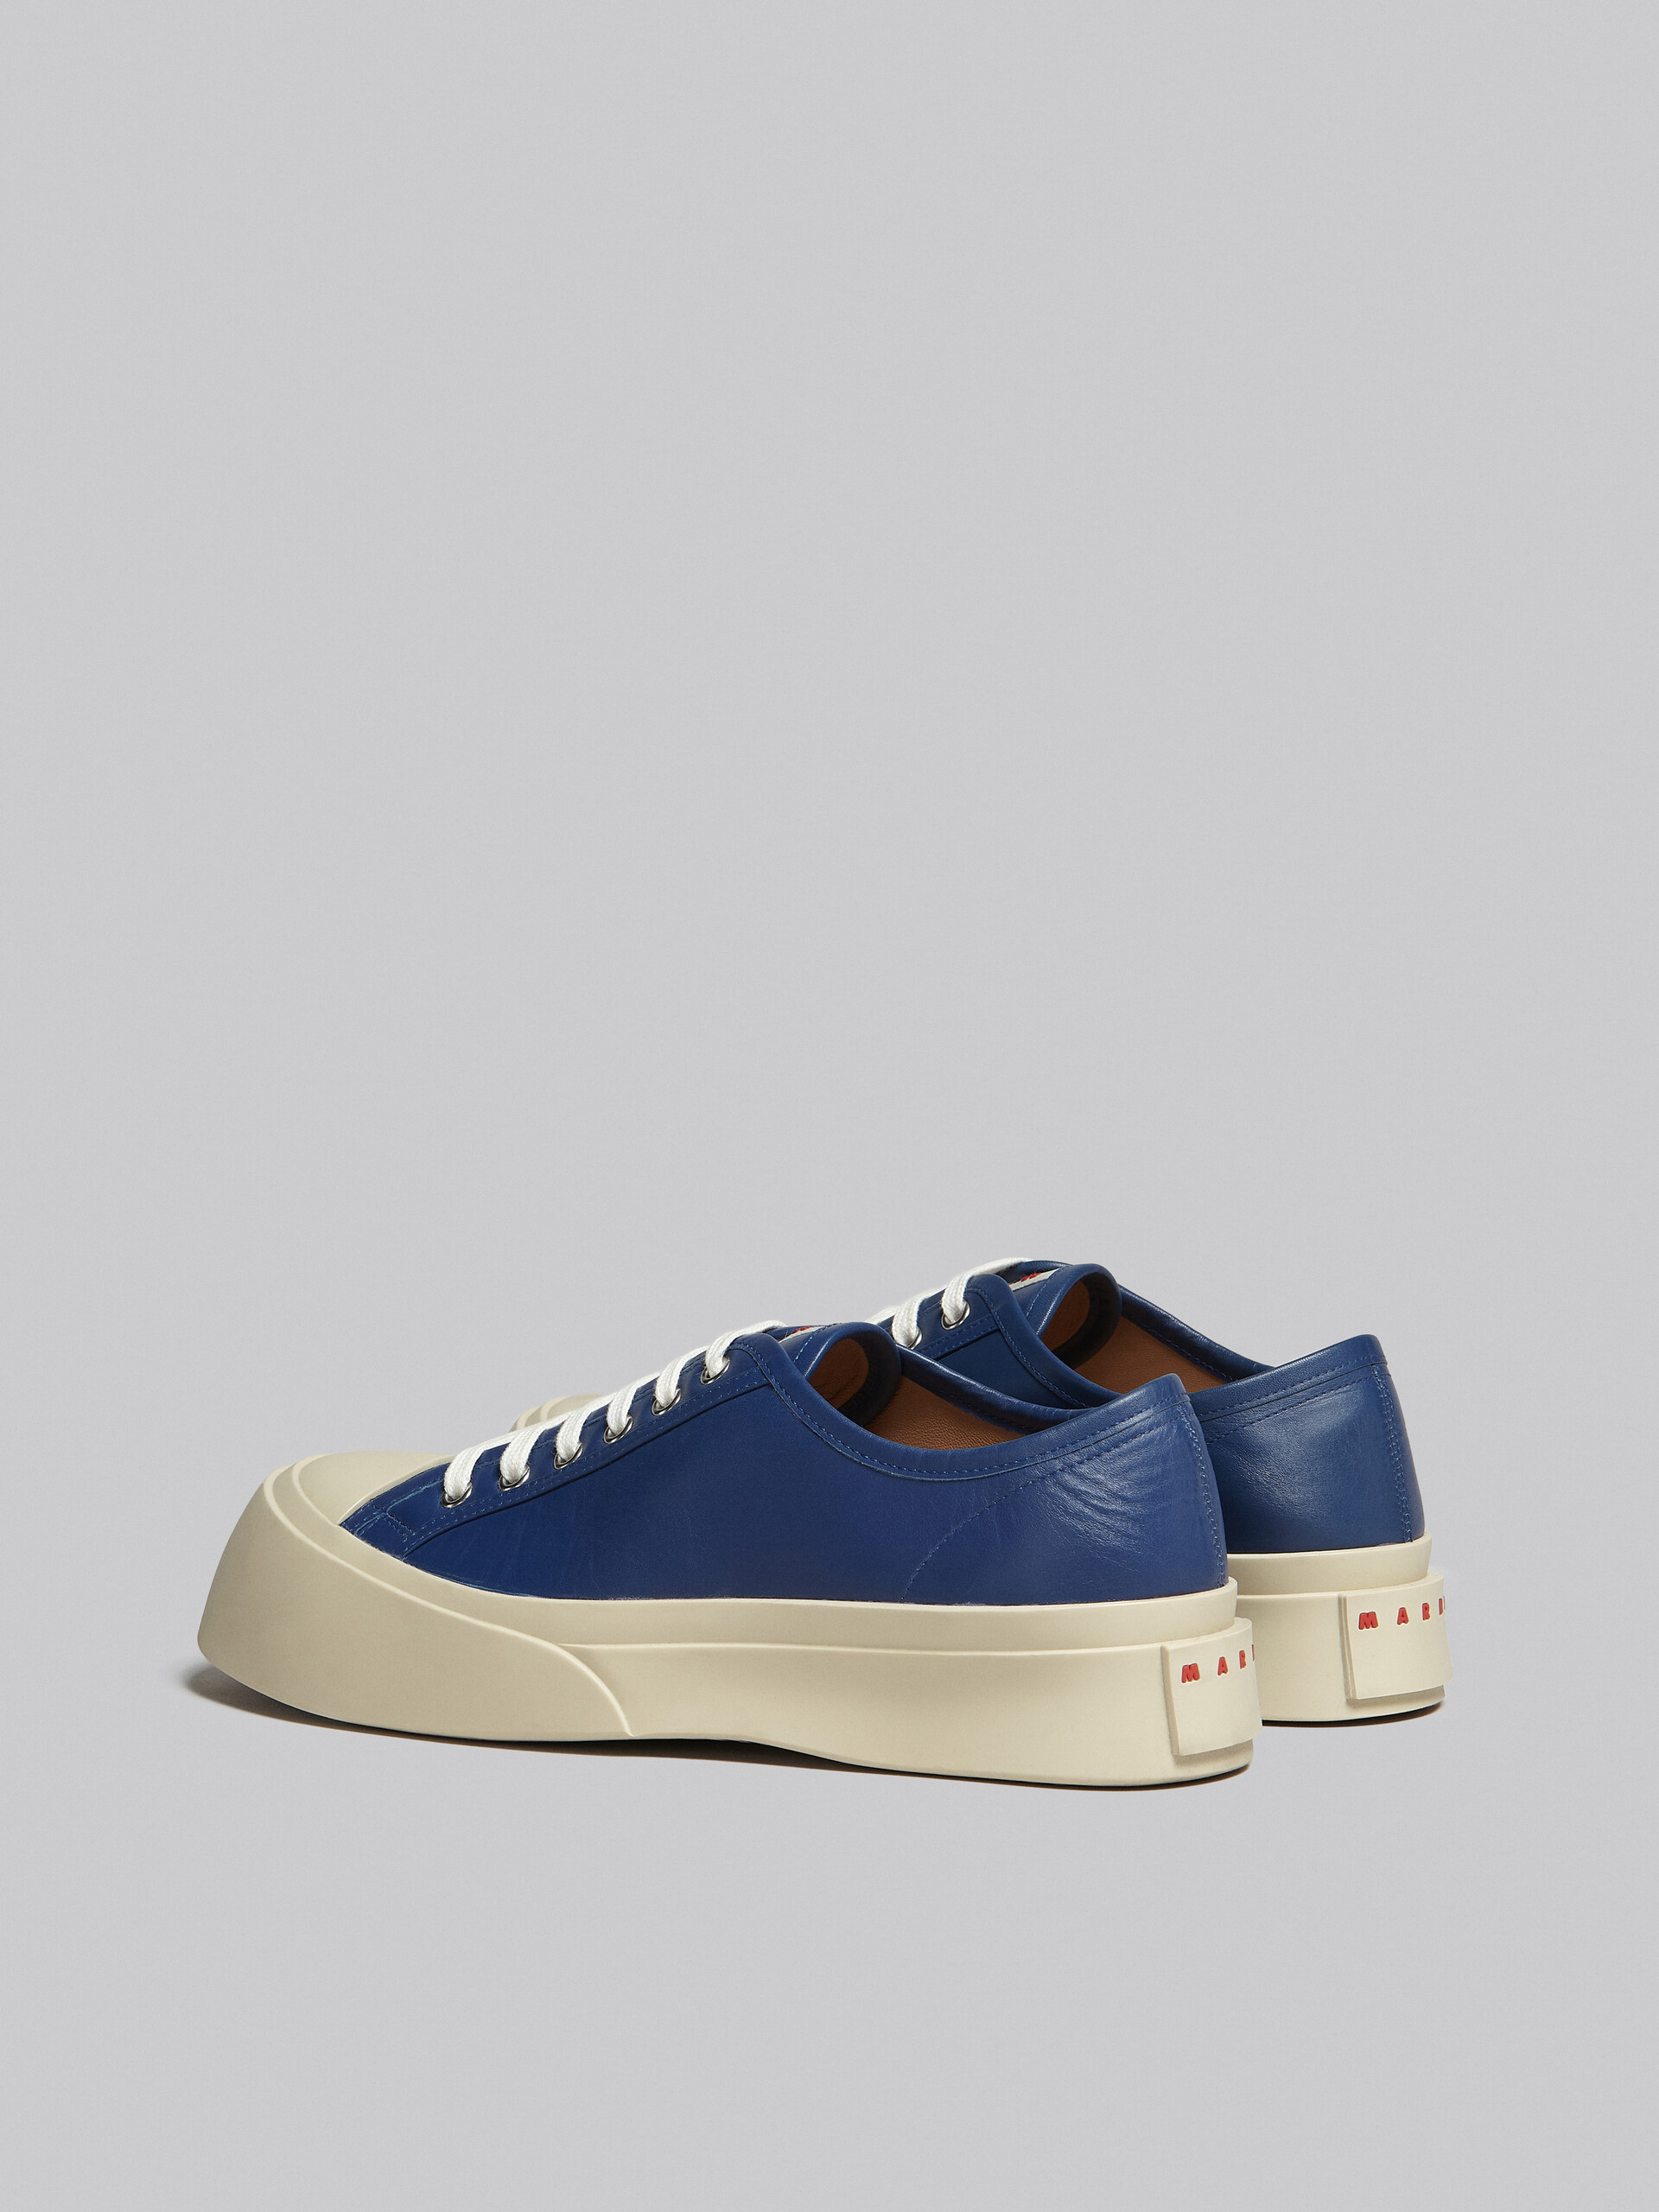 Sneakers Pablo en cuir nappa bleu - Sneakers - Image 3